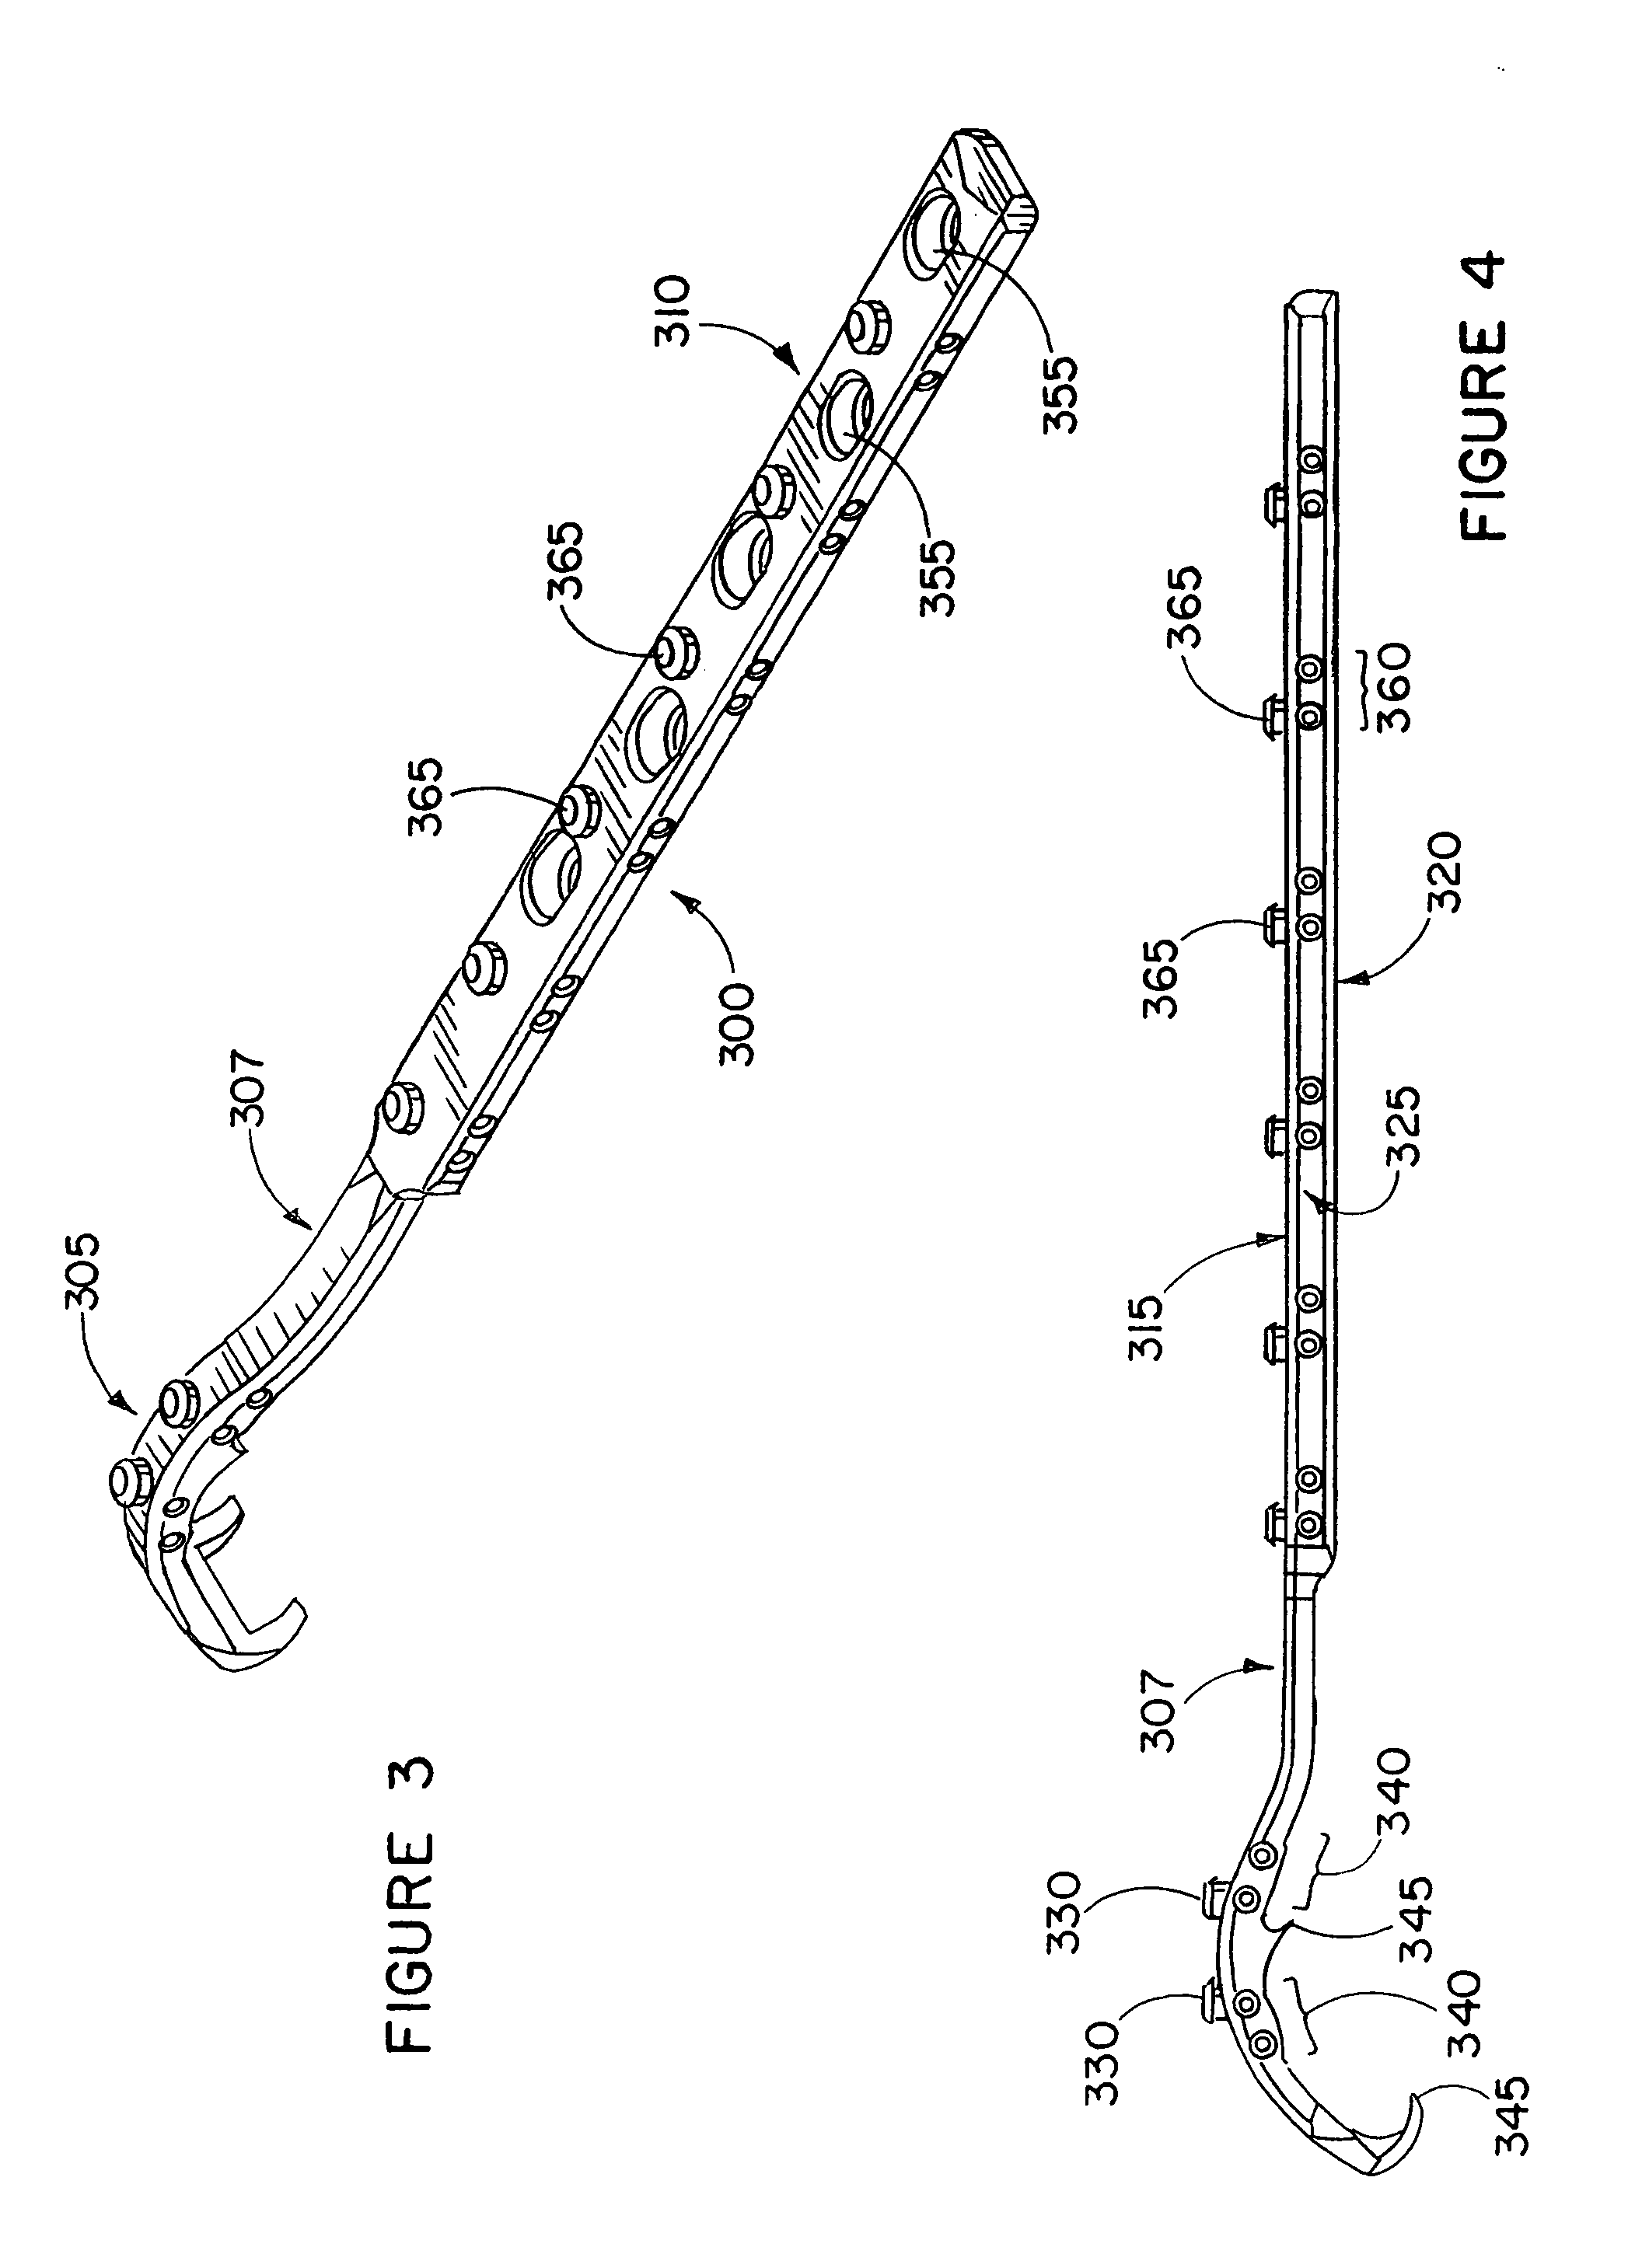 Apparatus and method for repairing the femur